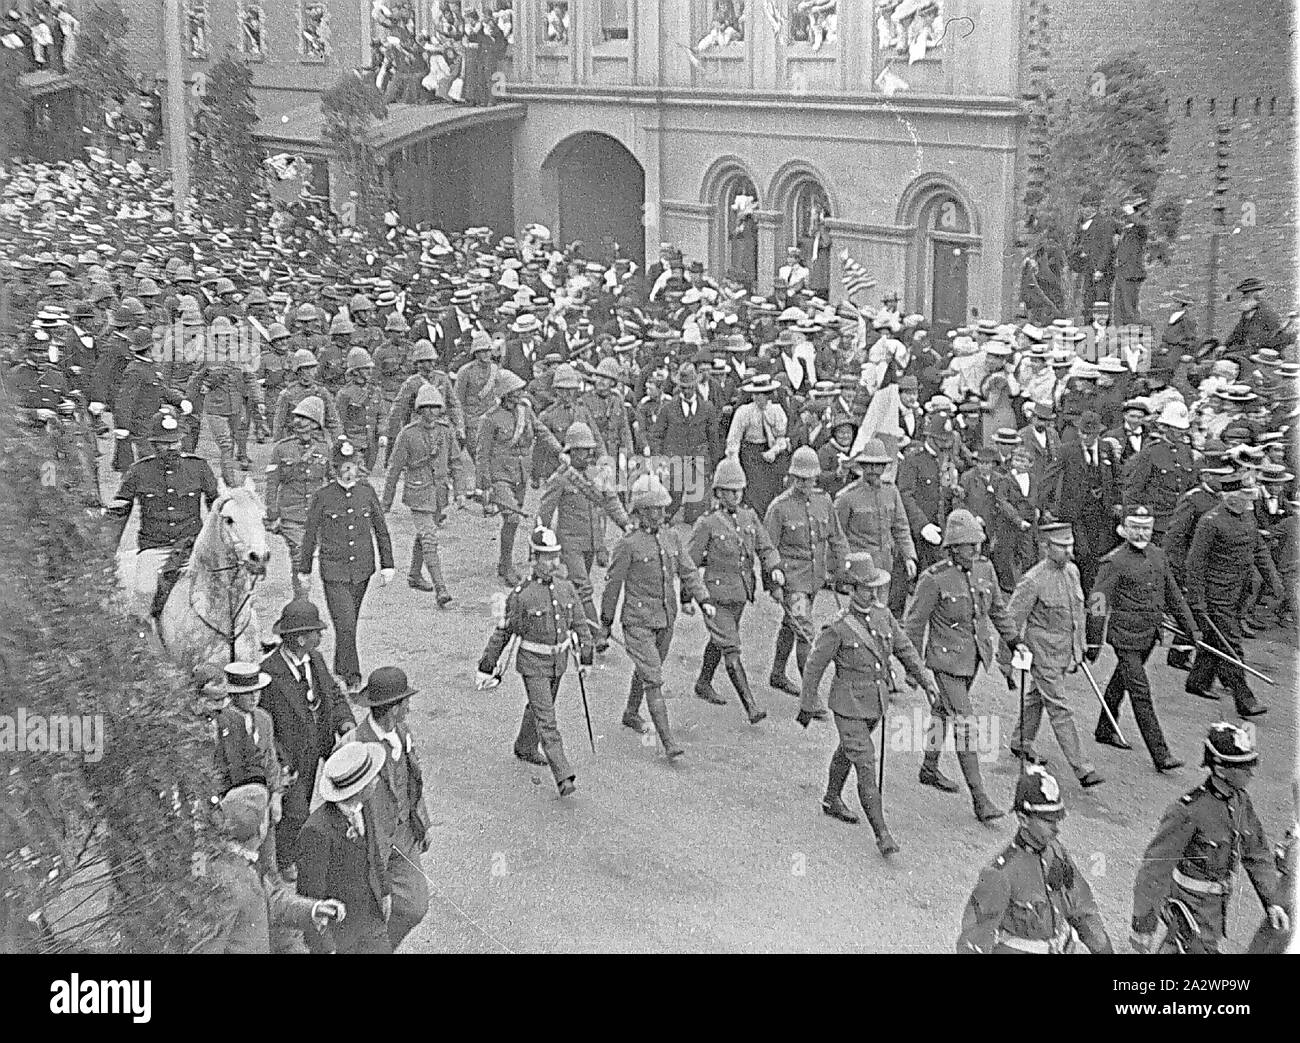 Negative - Launceston, Tasmanien, Post 1900, Truppen der ersten Südafrikanischen Kontingent durch Launceston paradieren, bei ihrer Rückkehr aus dem Burenkrieg Stockfoto